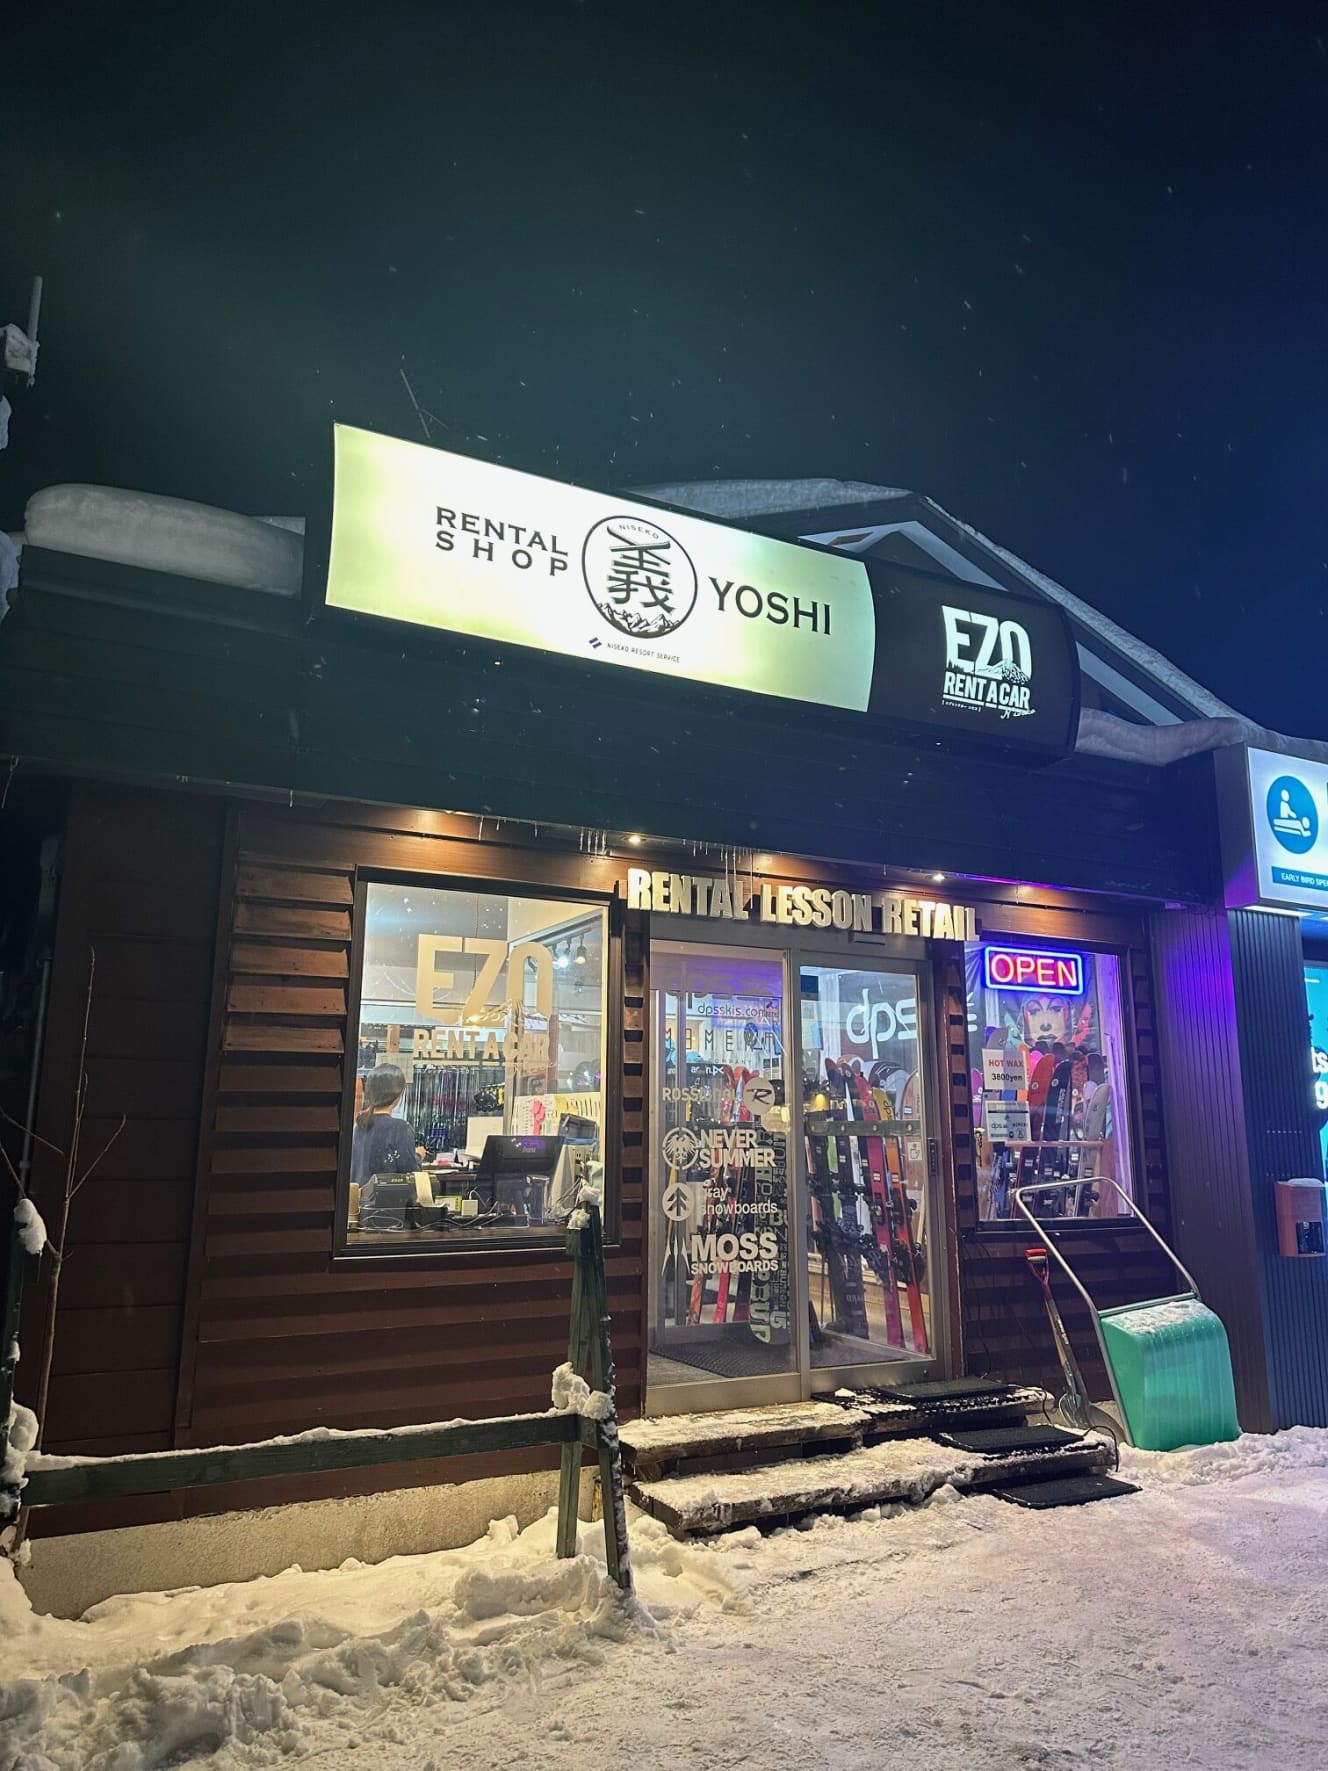 田中さんが経営する「レンタルショップ・義」ひらふ店。スキー、ブーツ、ウエア、ゴーグルなどのスキーアイテム一式をレンタルしている。中にはゲレンデで撮影するだけのアジア系旅行者もいるという（PHOTO：田中さん提供）